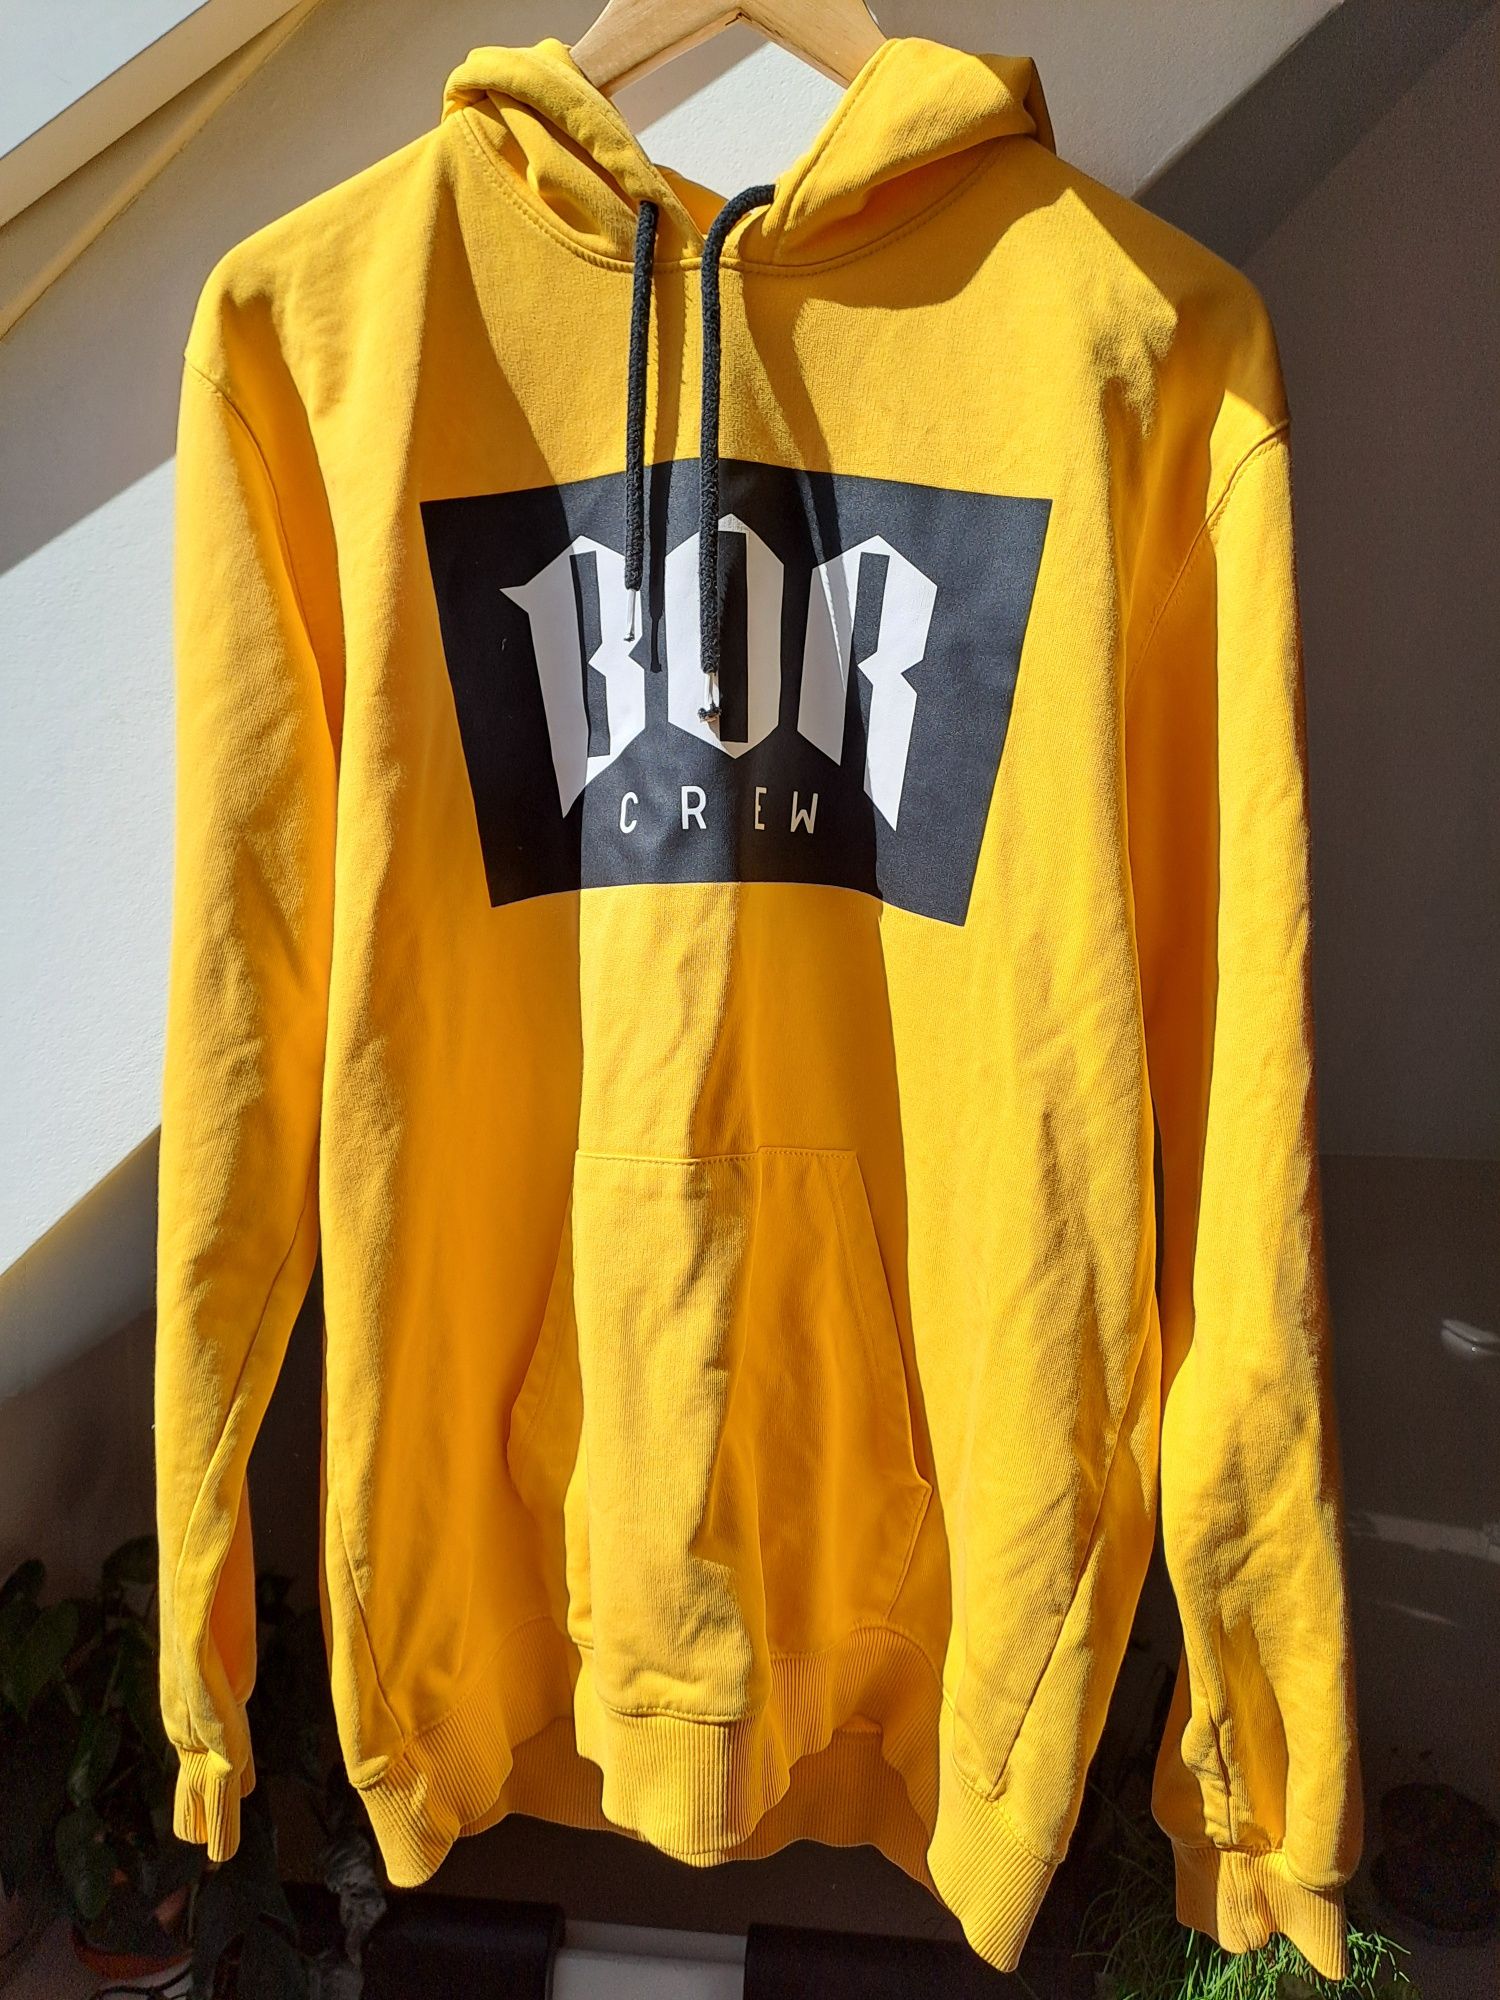 Bluza Borcrew - BOR - Paluch - Biuro Ochrony Rapu